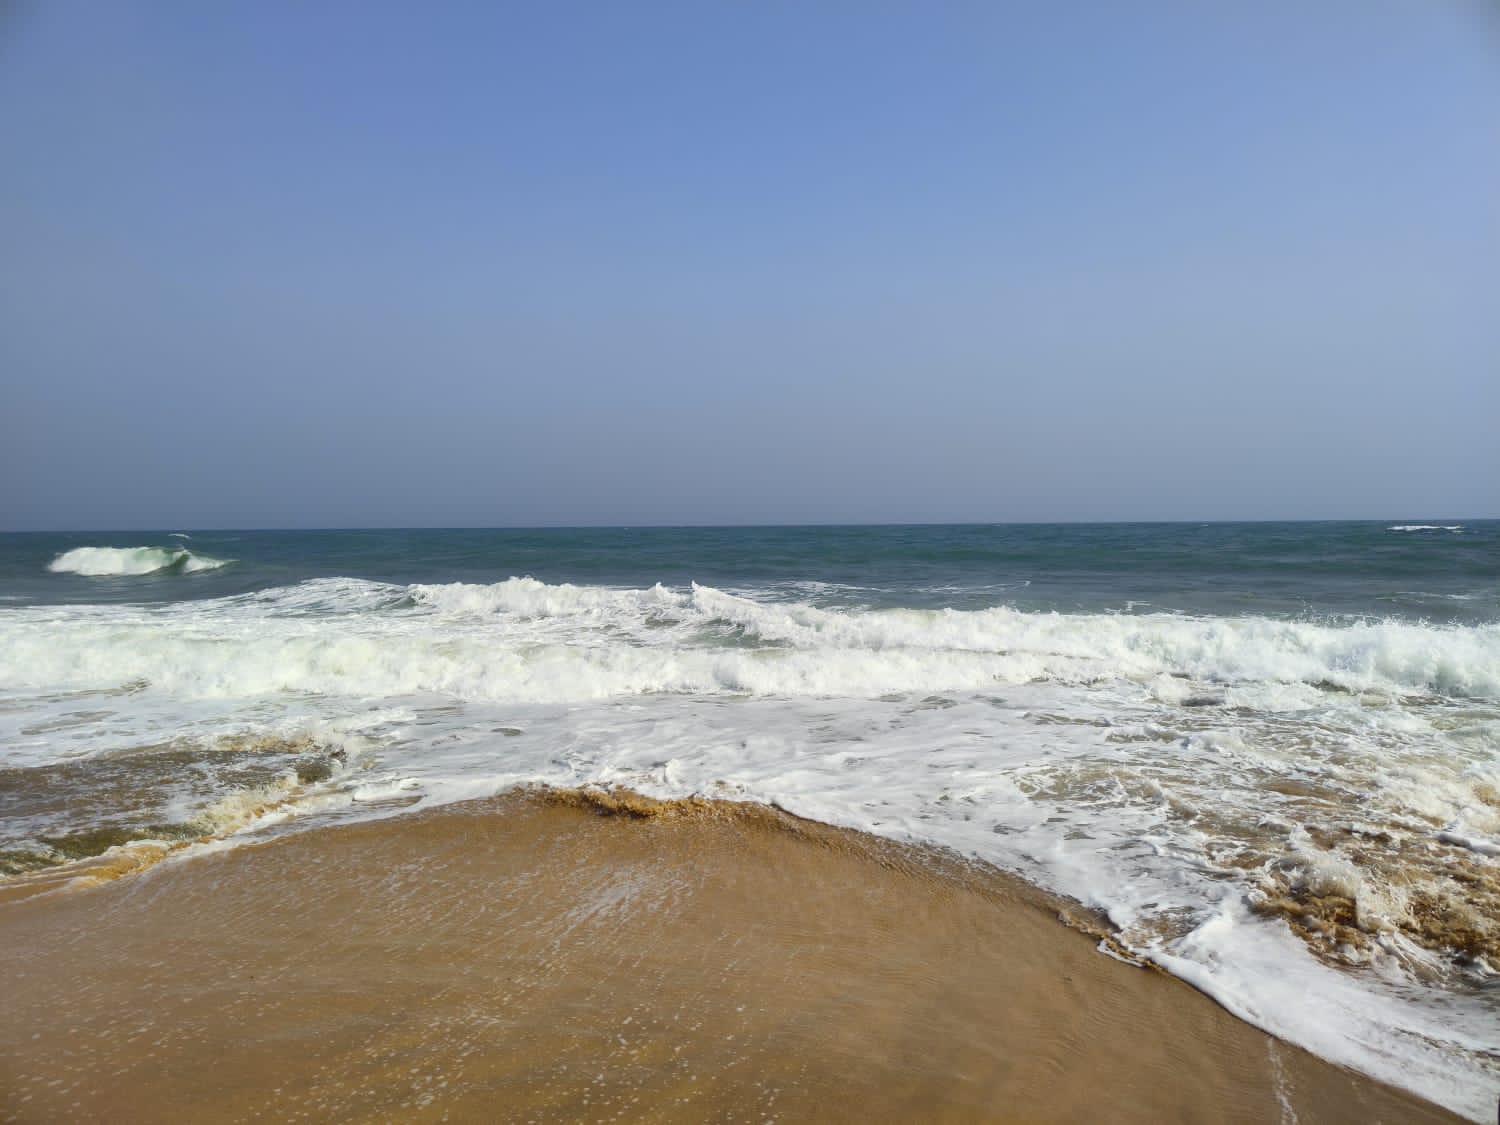 Fotografie cu Manapad Beach - locul popular printre cunoscătorii de relaxare